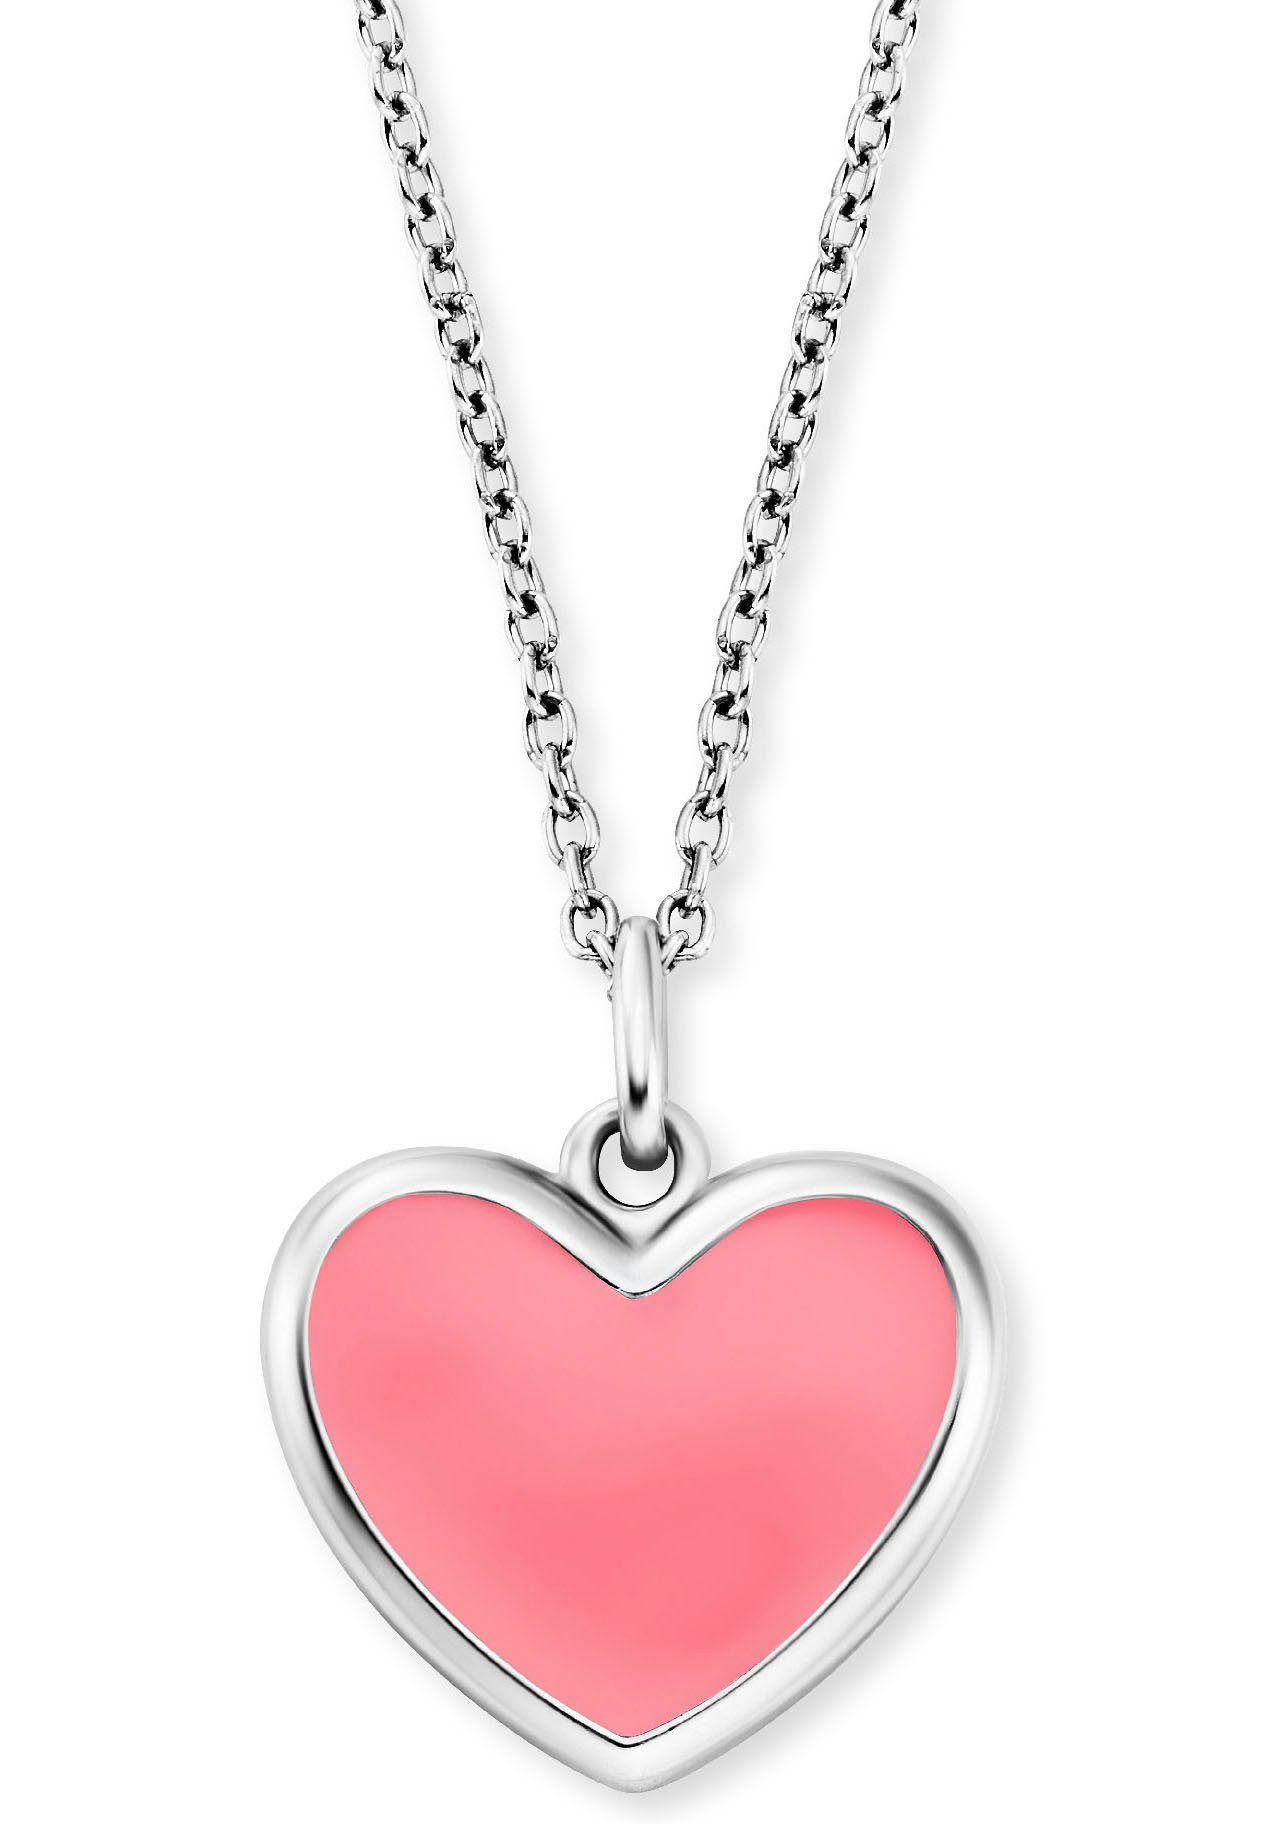 Schmuck Herz, Heart, silberfarben-rosa HEN-HEART-06, Kette Geschenk, Anhänger Little HEN-HEART-13 Herzengel mit